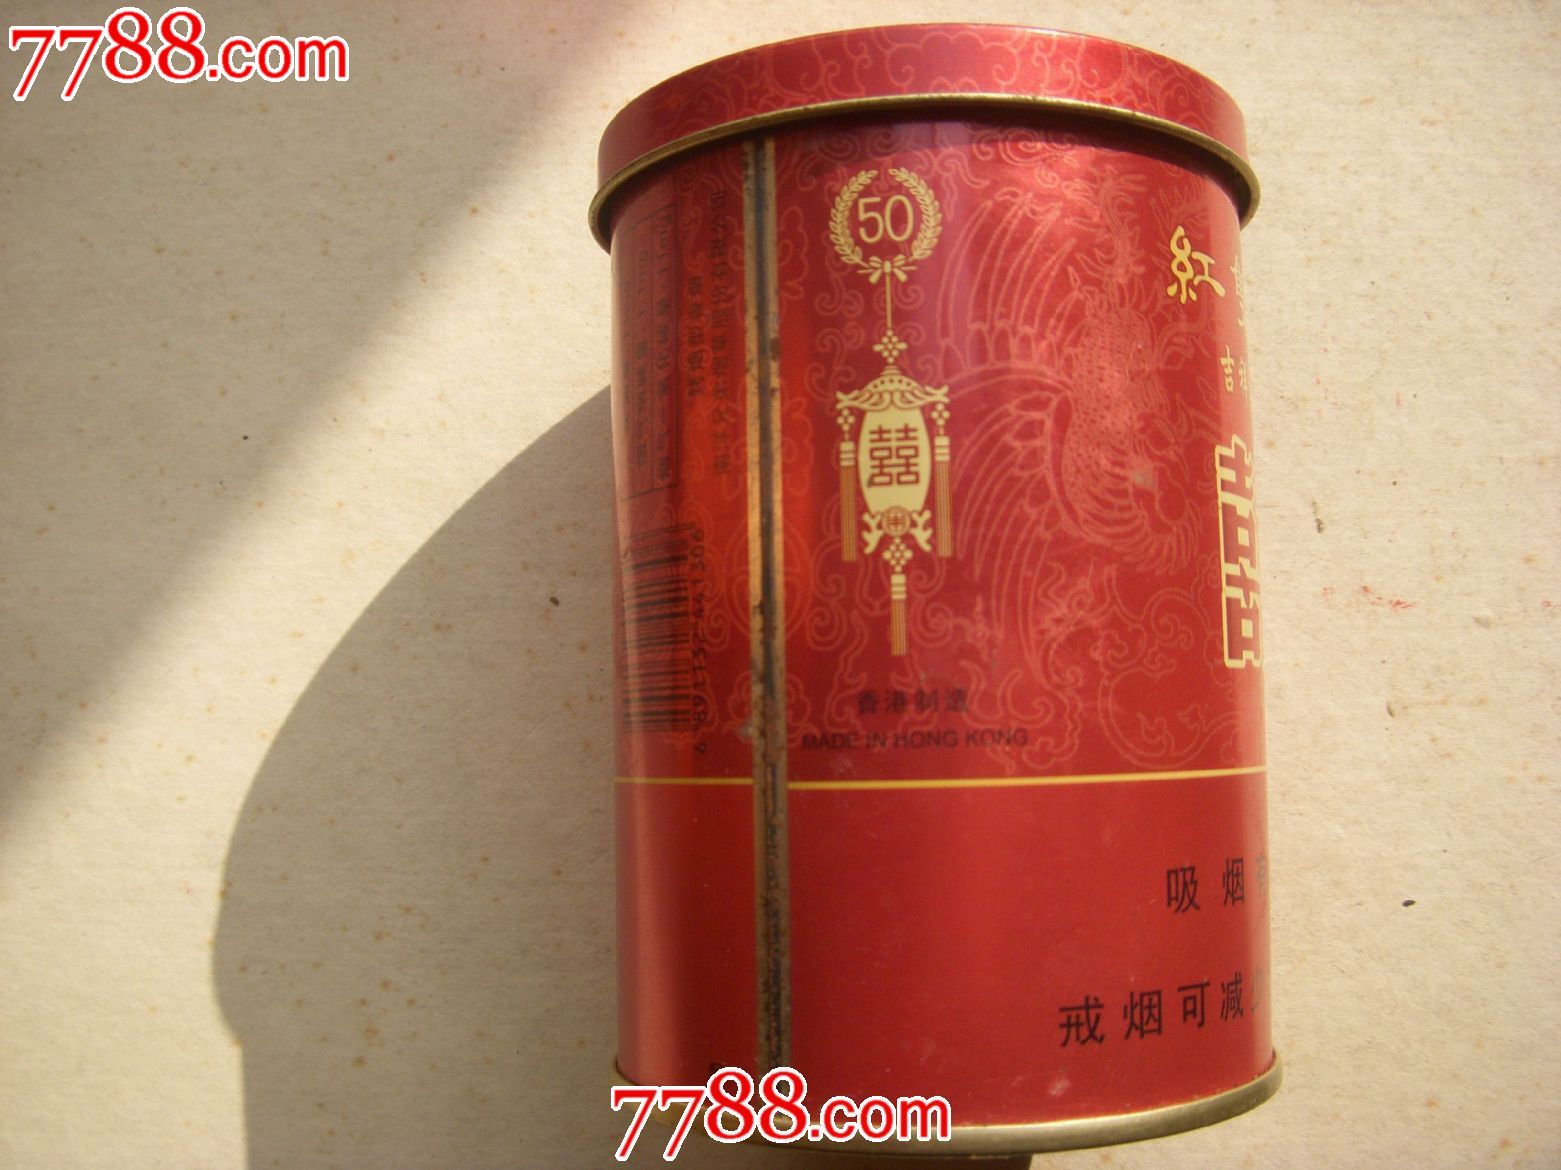 香港吉祥龙凤红双喜烟听-价格:20元-se200800